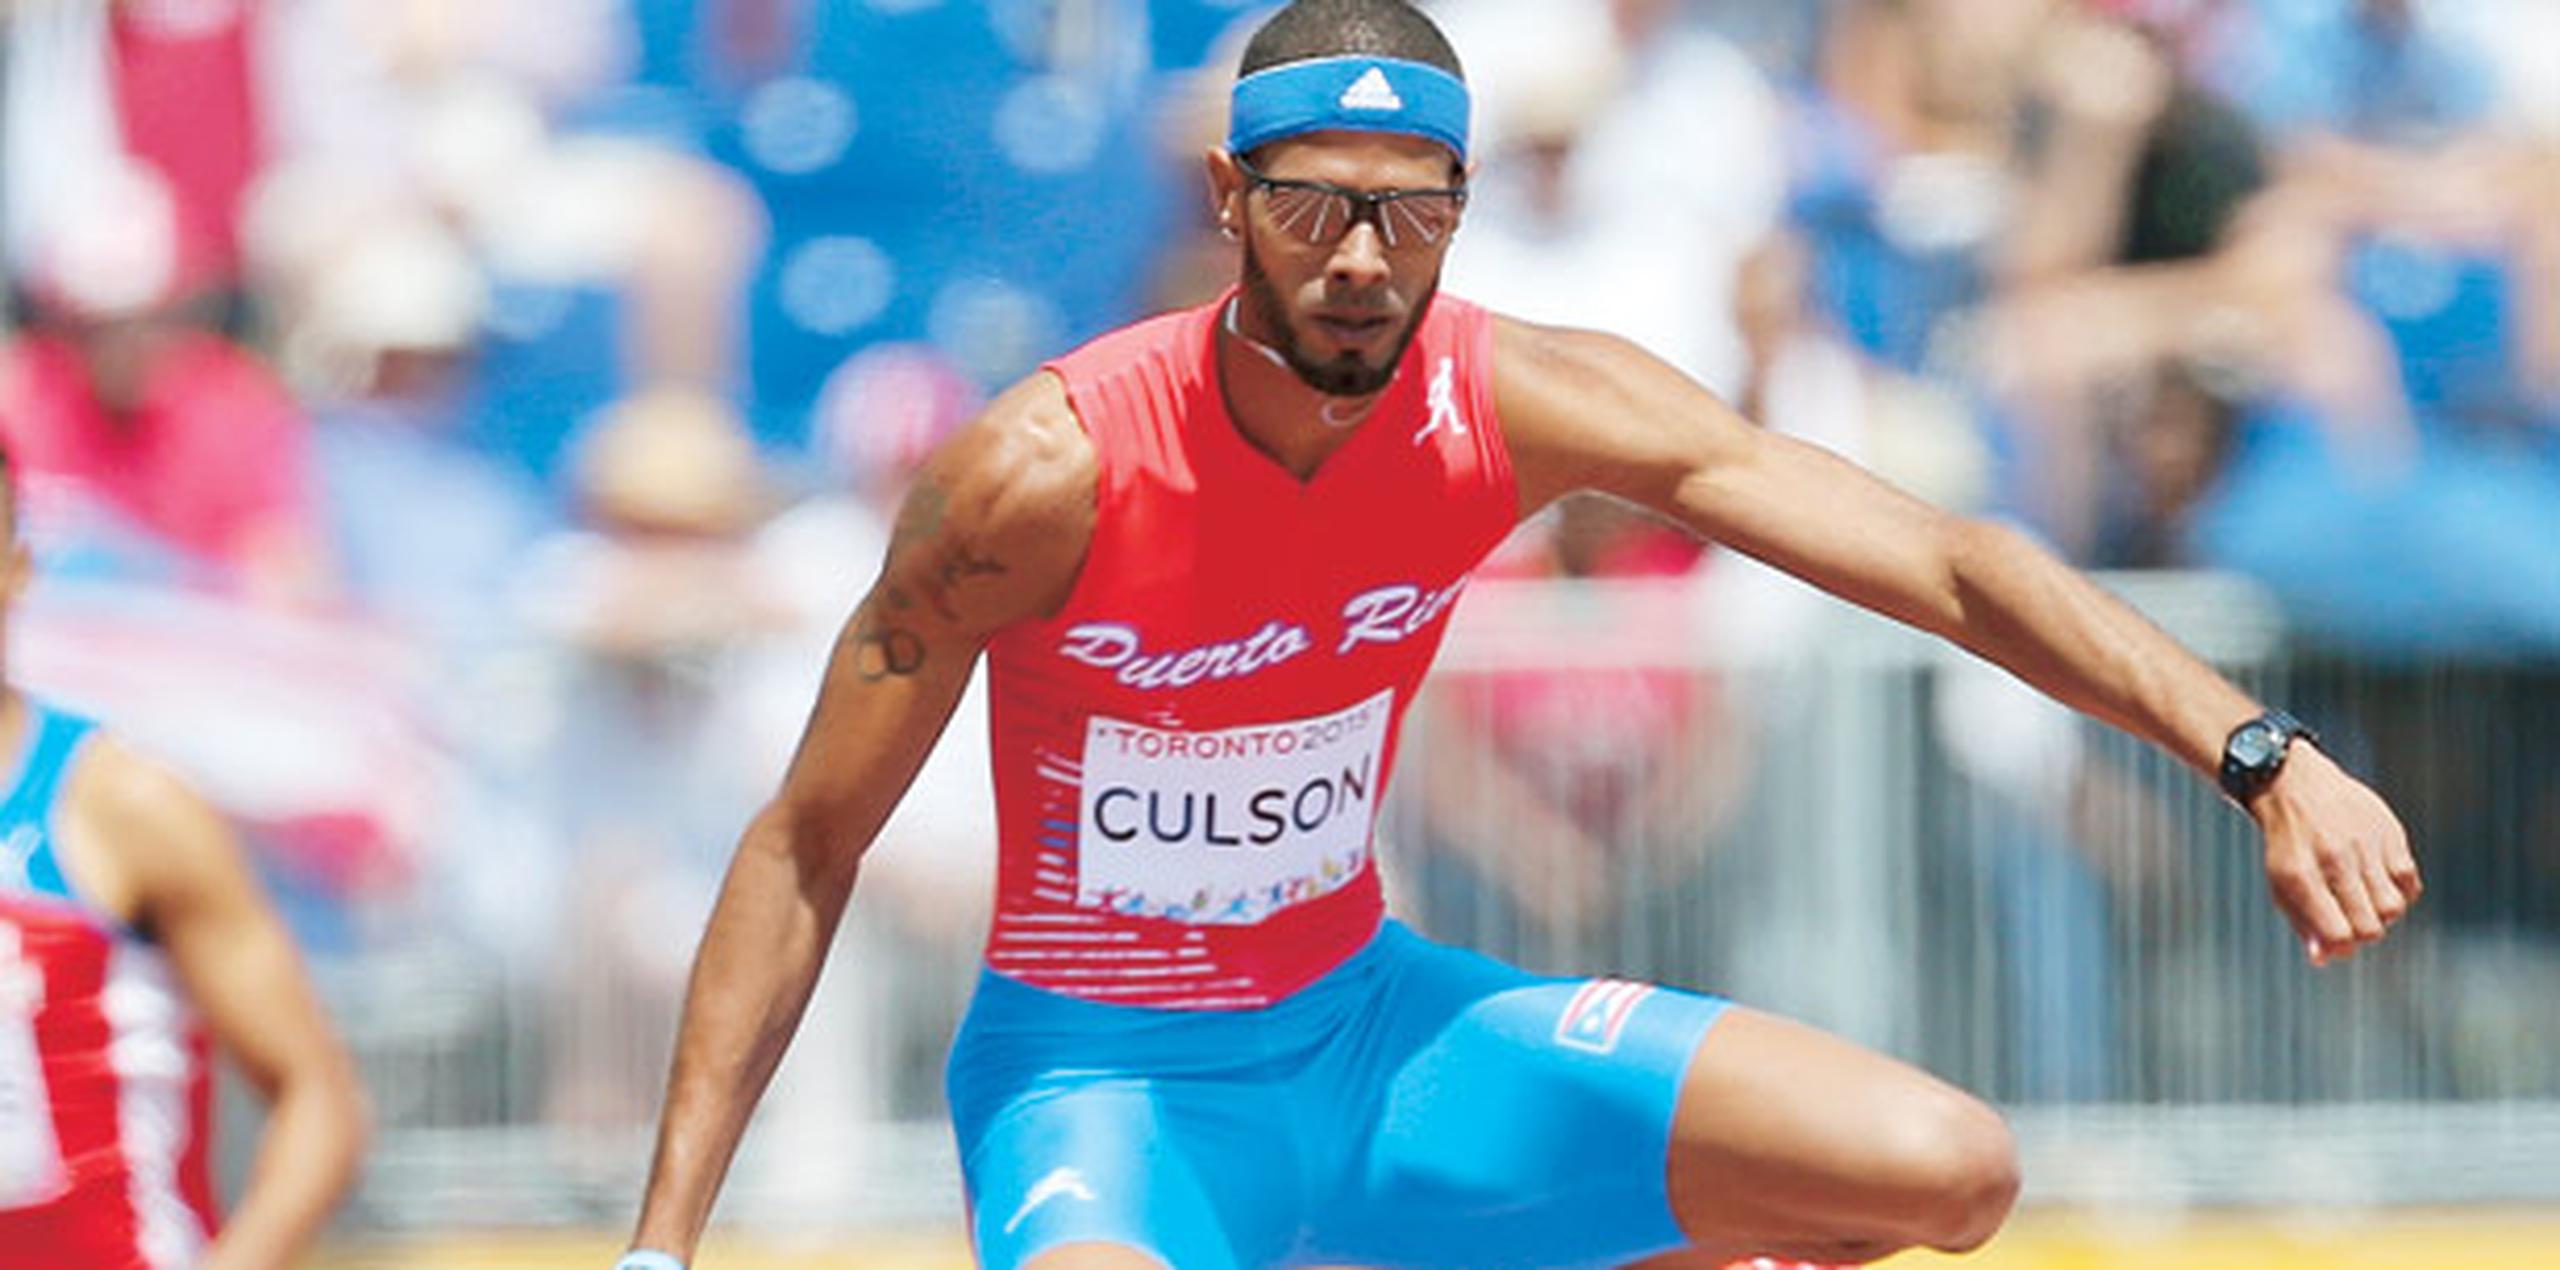 Para Culson, será su primera carrera oficial desde que ganó medalla de plata en los XVII Juegos Panamericanos de Toronto 2015. (Archivo/juan.martinez@gfrmedia.com)